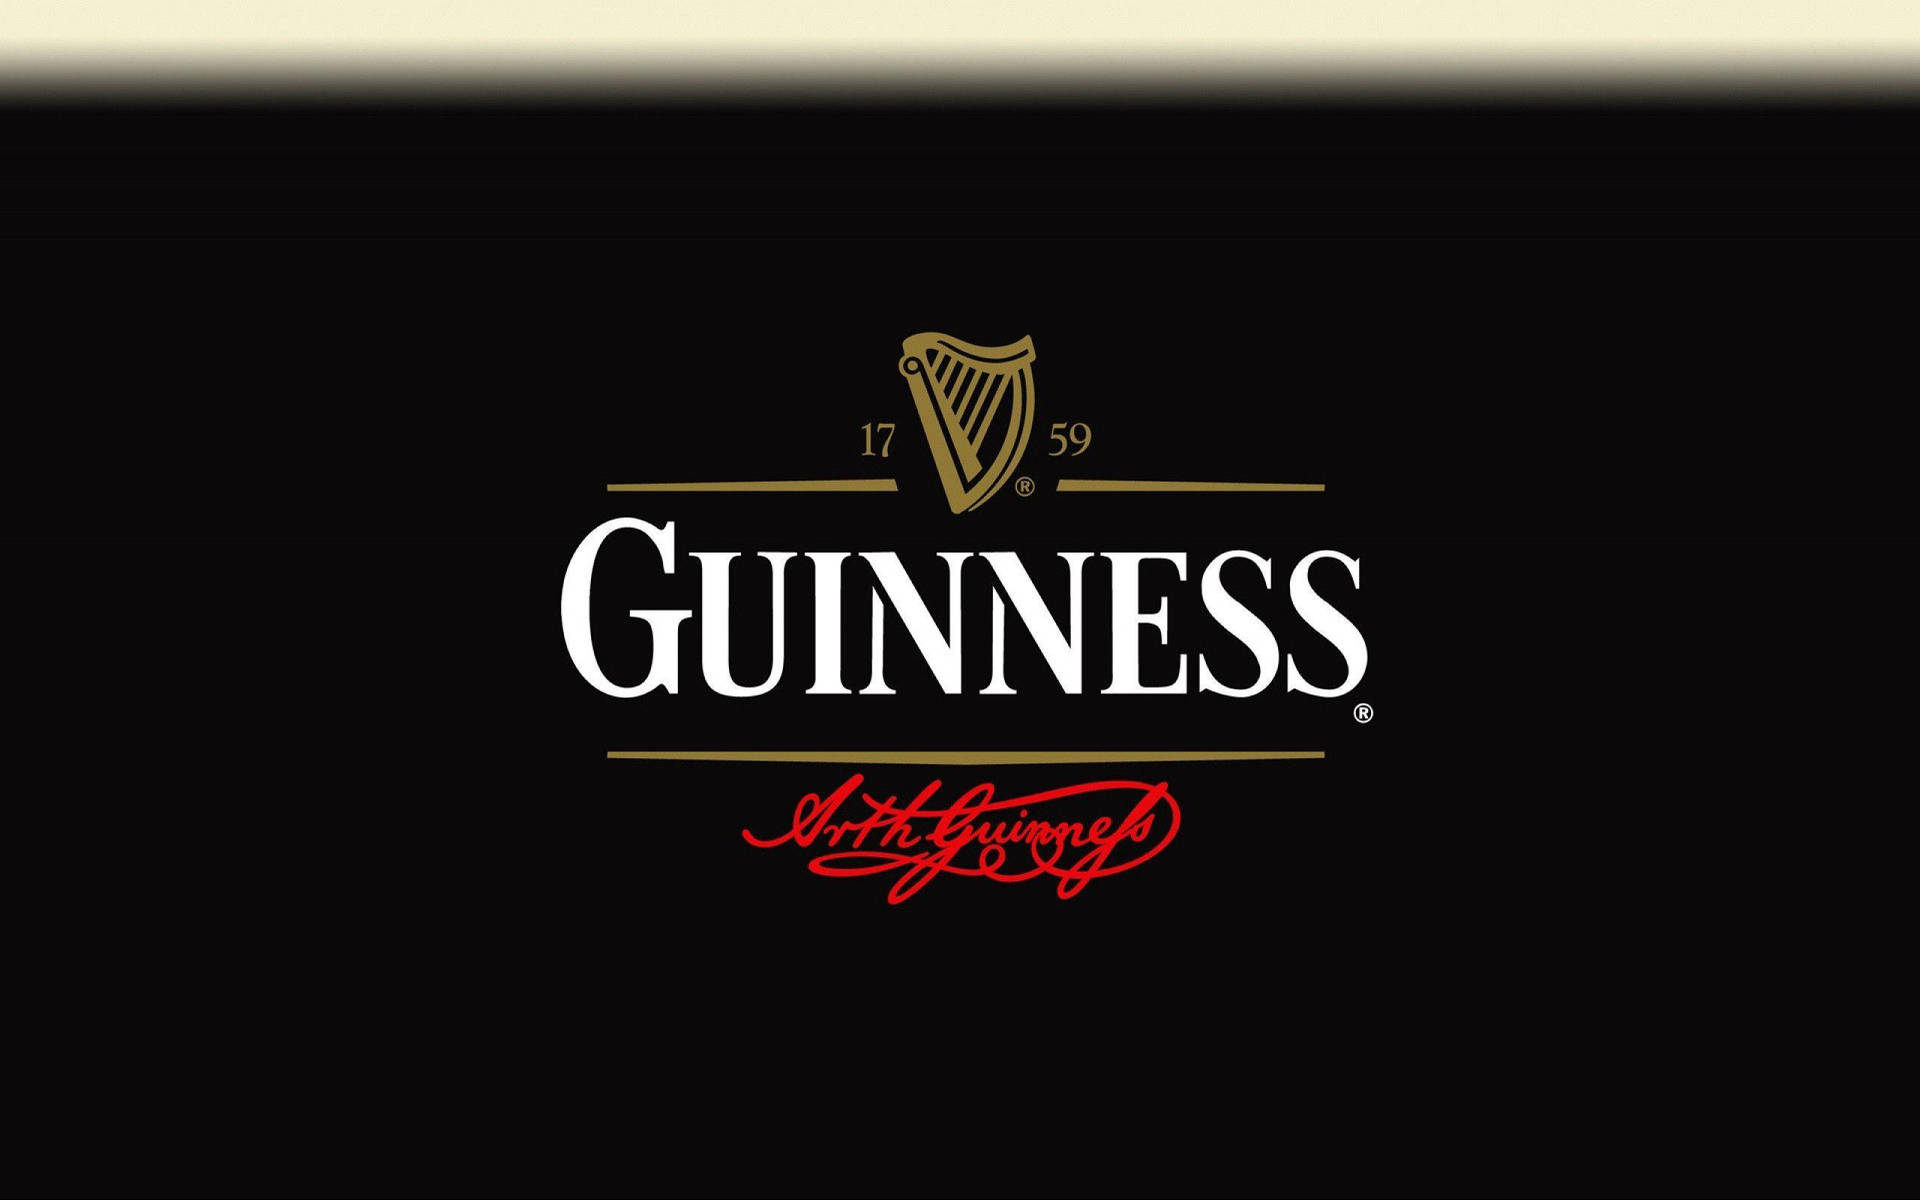 Irländsktorr Stout Guinness 1759 Logga. Wallpaper